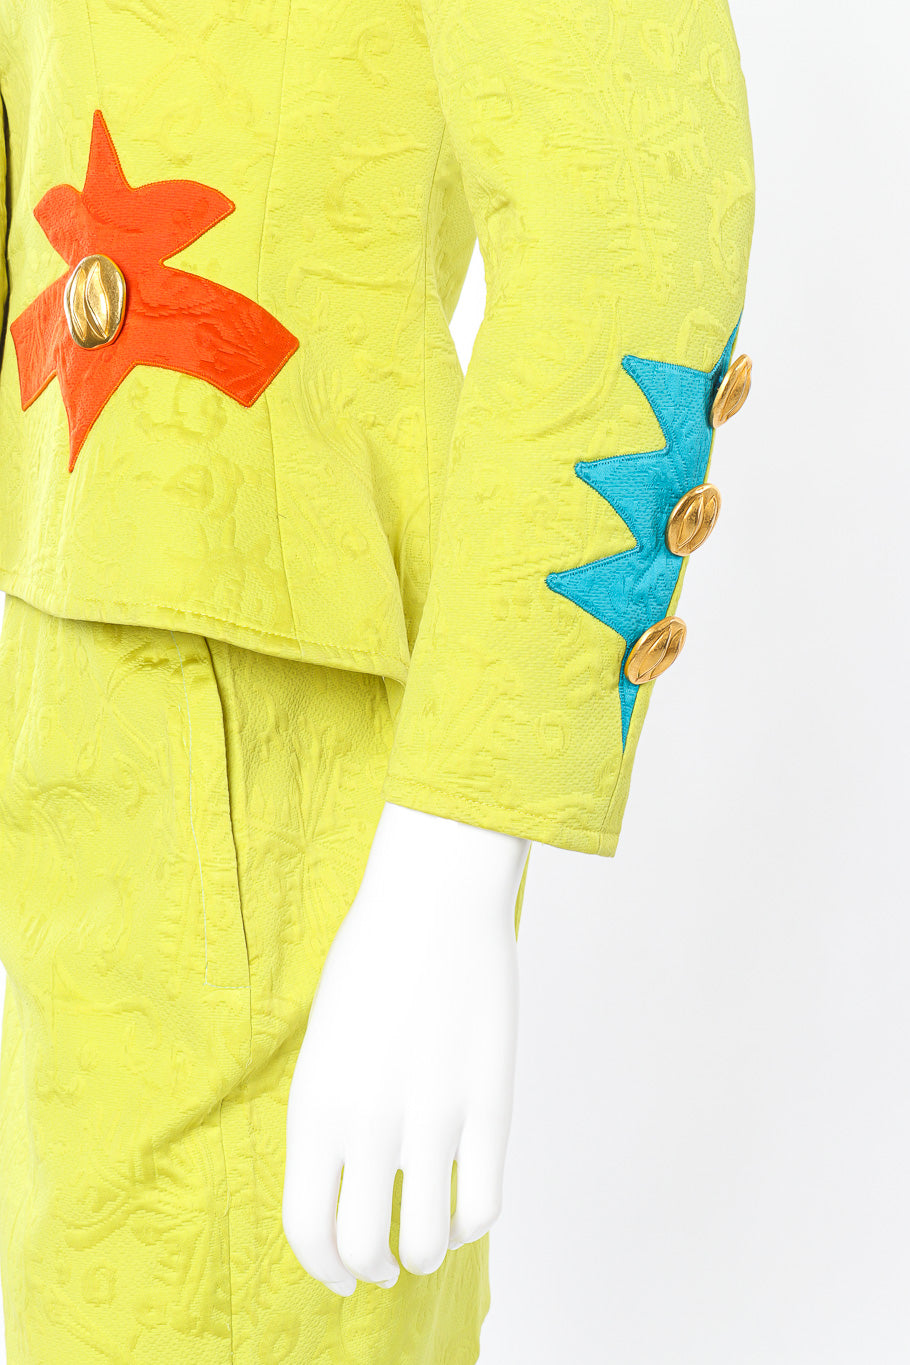 Vintage Christian Lacroix Appliqué Peplum Jacket & Skirt Set sleeve closeup on mannequin @Recessla